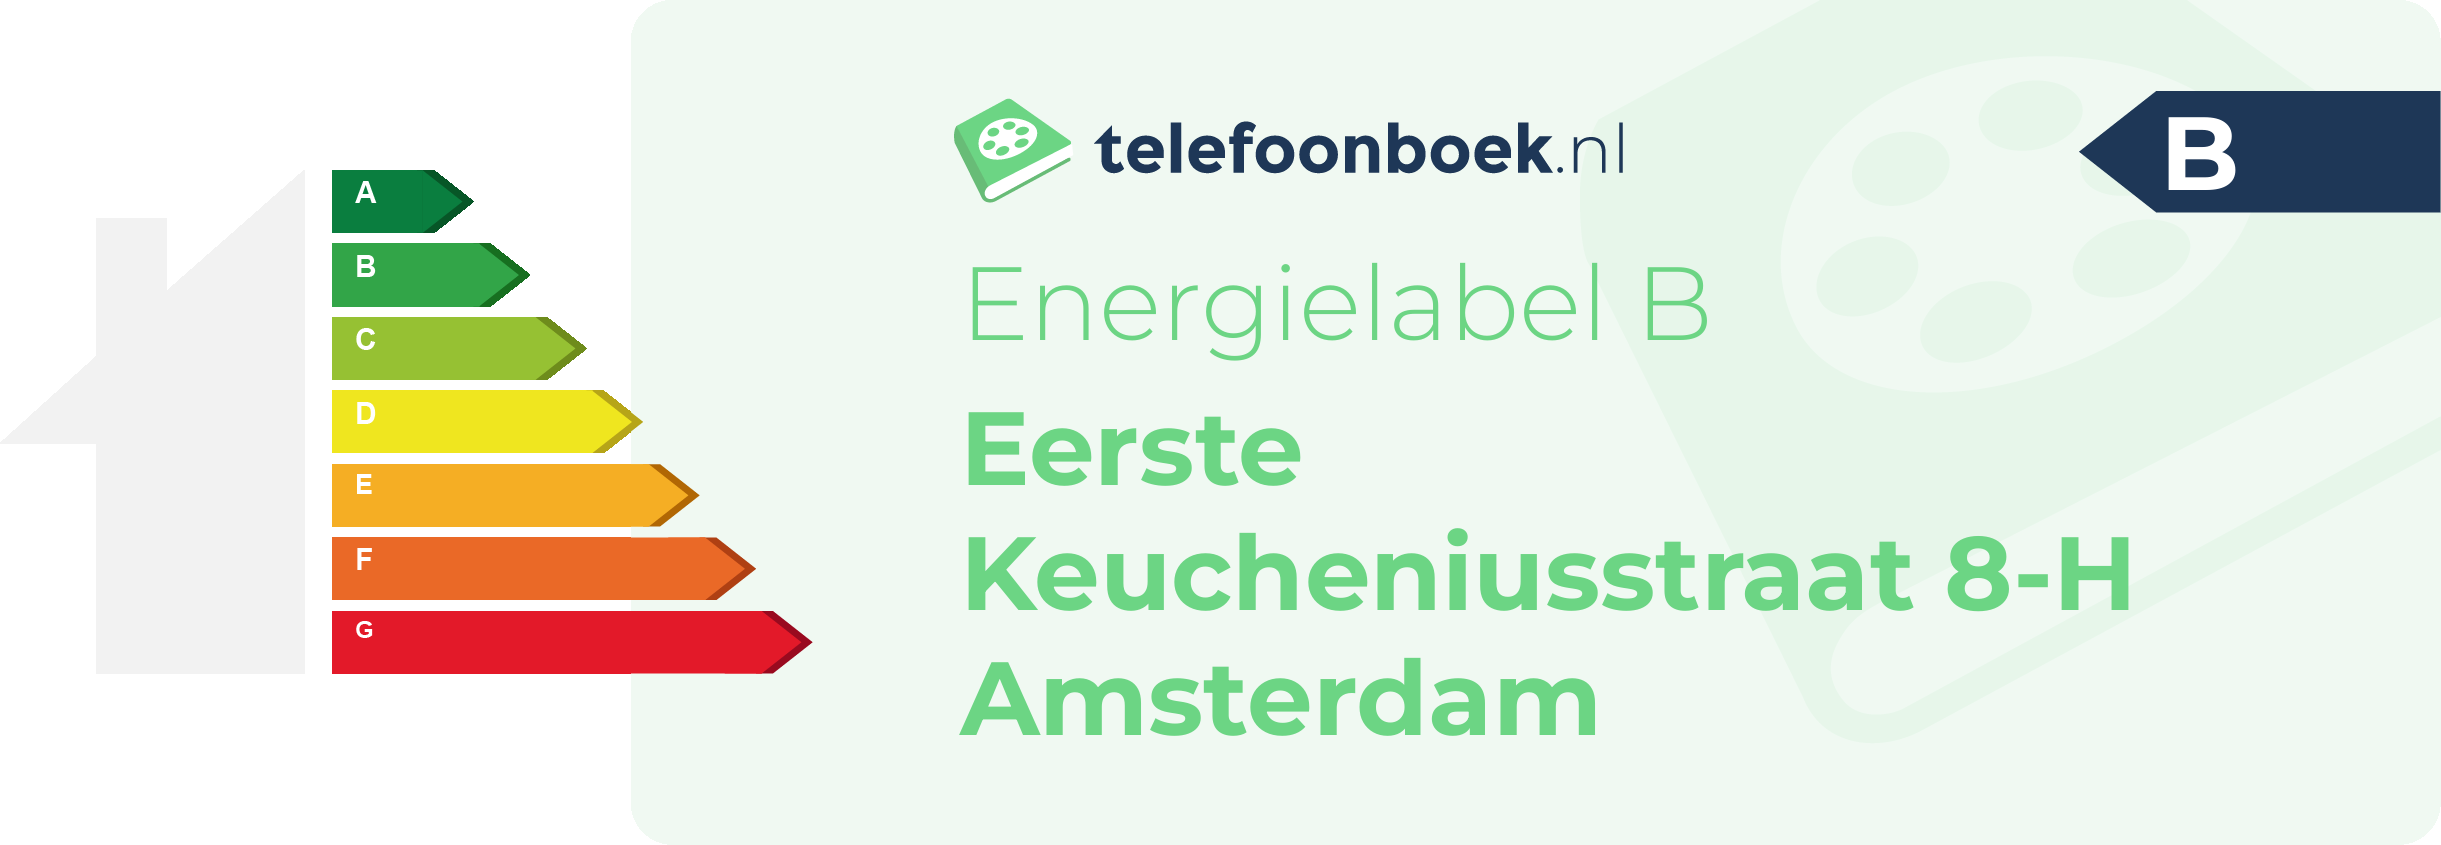 Energielabel Eerste Keucheniusstraat 8-H Amsterdam